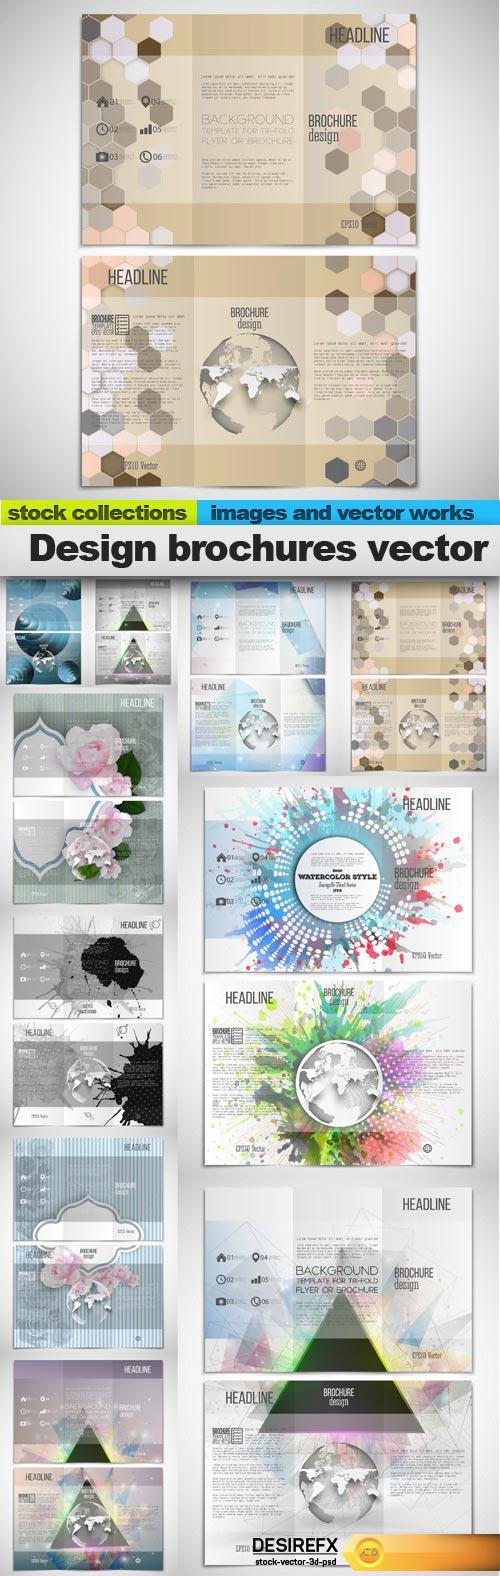 Design brochures vector, 10 x EPS